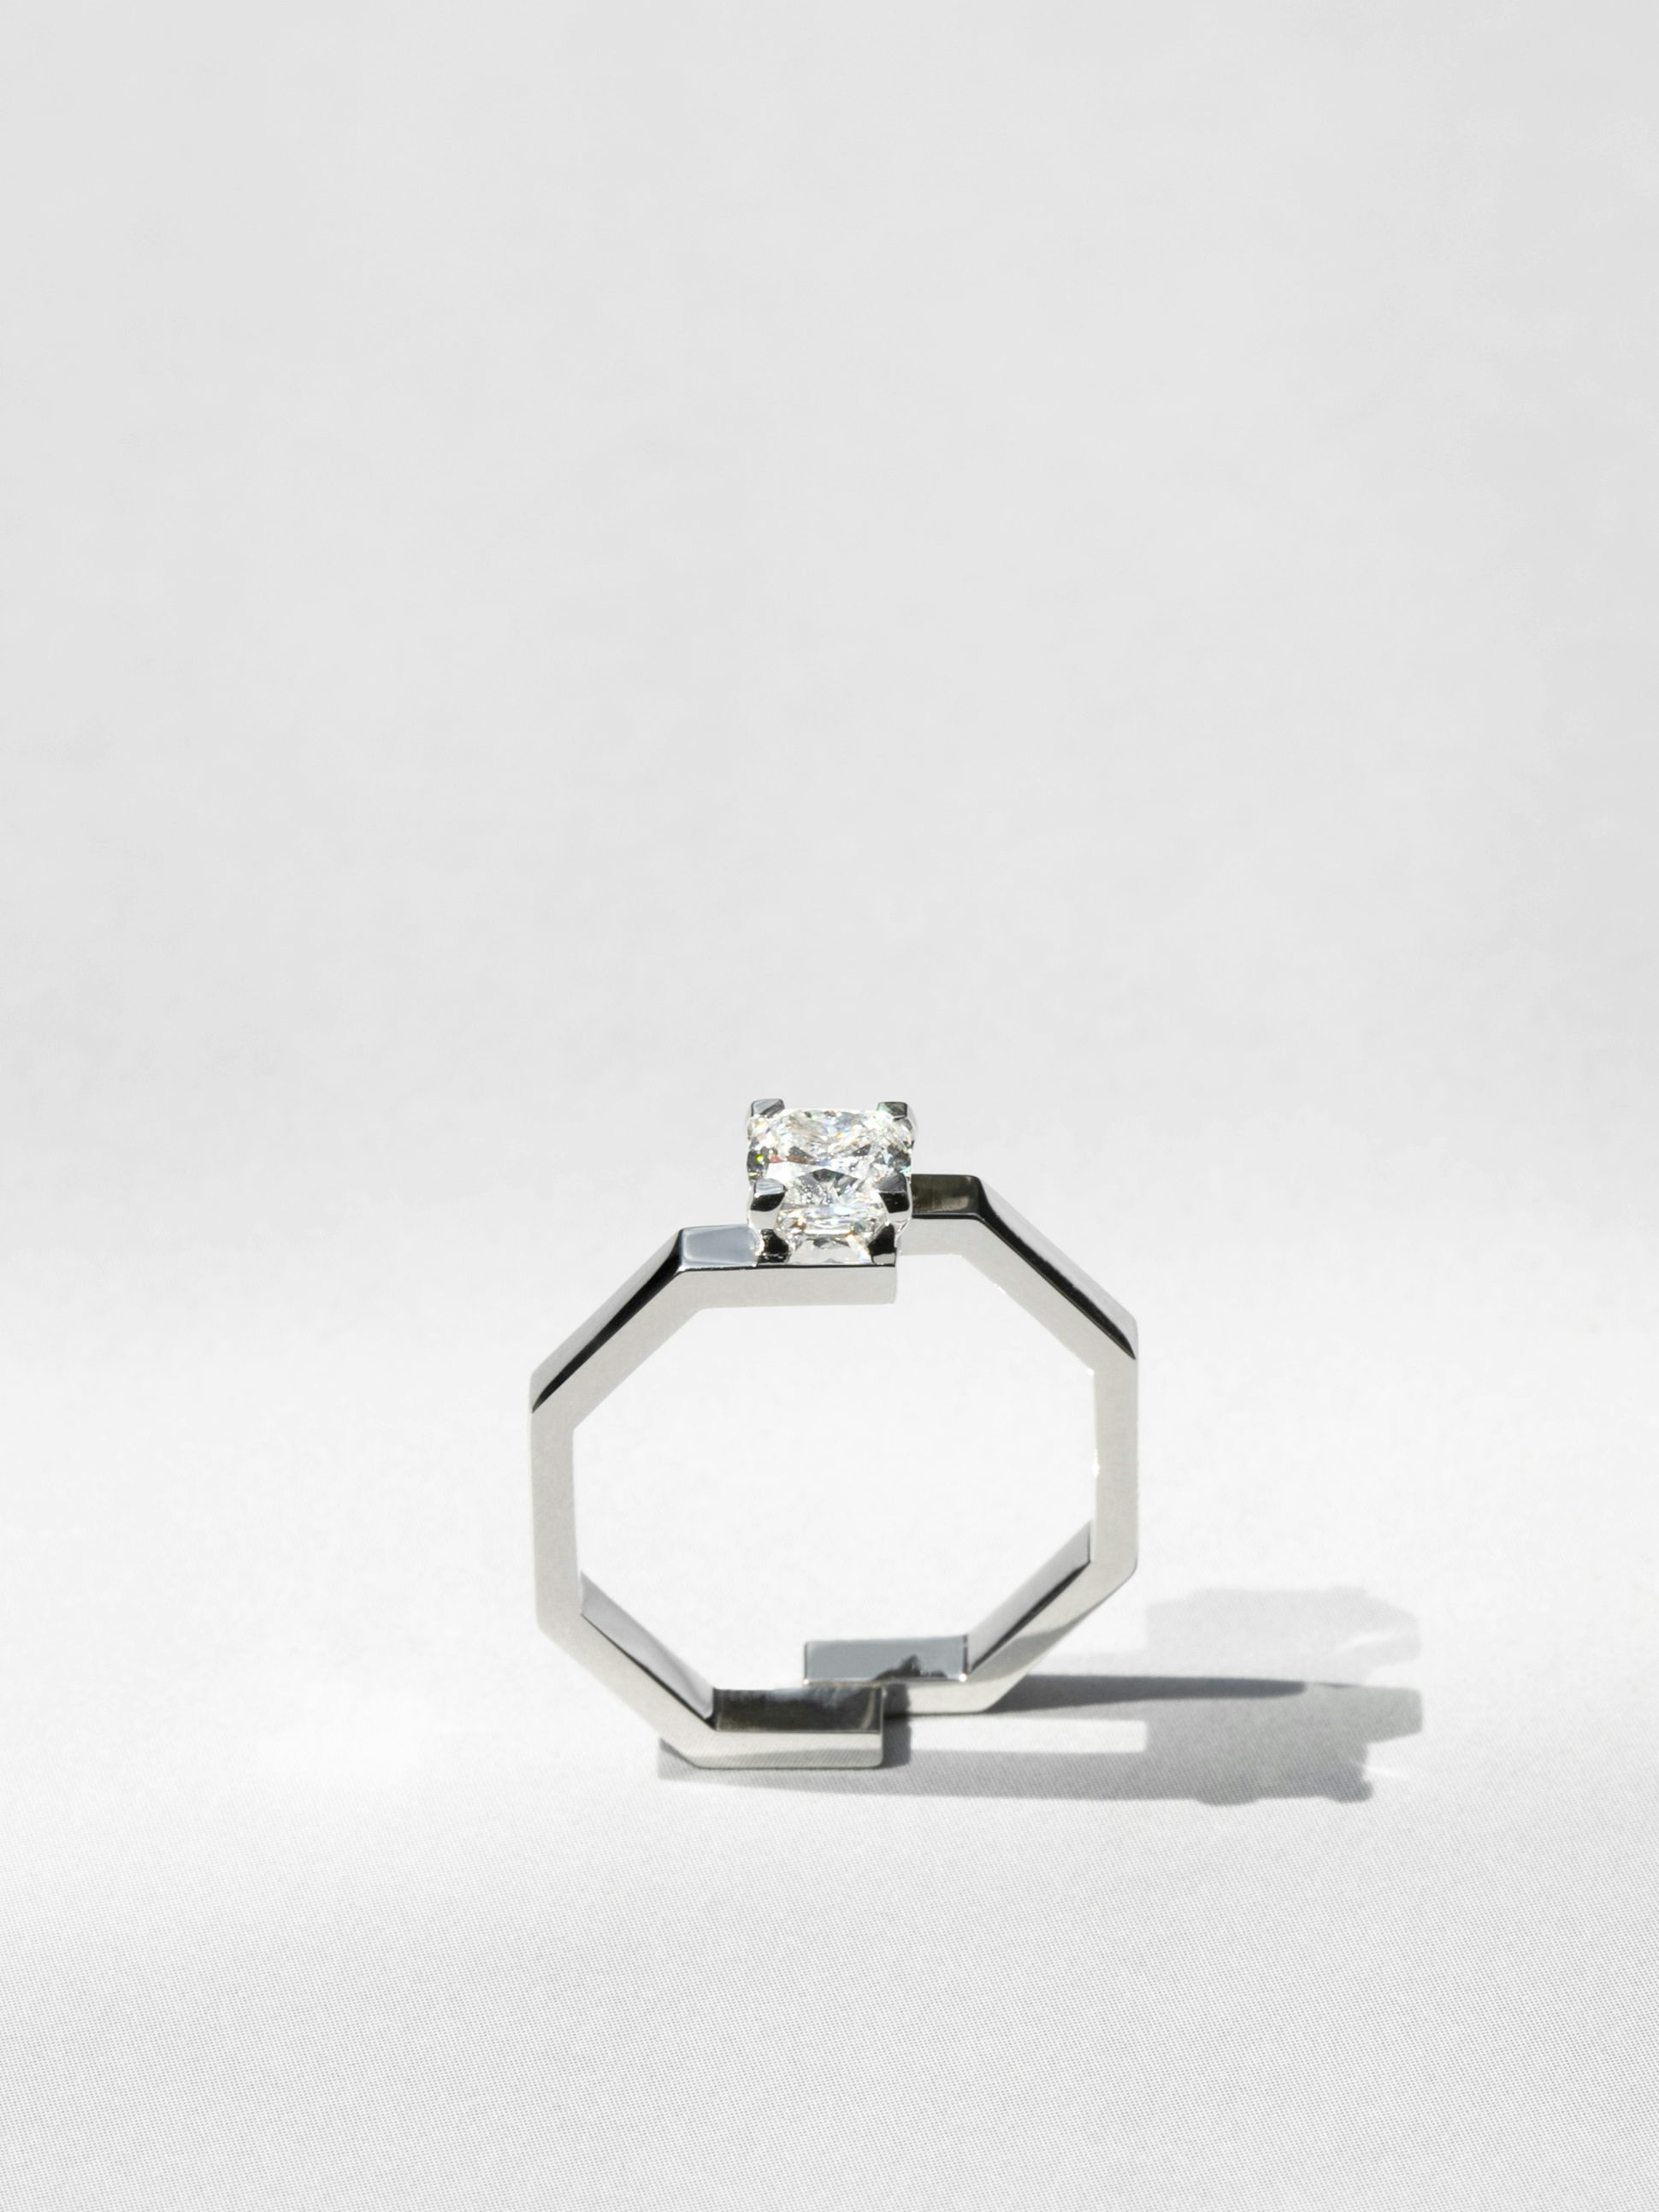 Solitaire Octogone en Or blanc éthique 18 carats certifié Fairmined serti d'un diamant de synthèse taille coussin de 0,7 carat (qualité GVS).